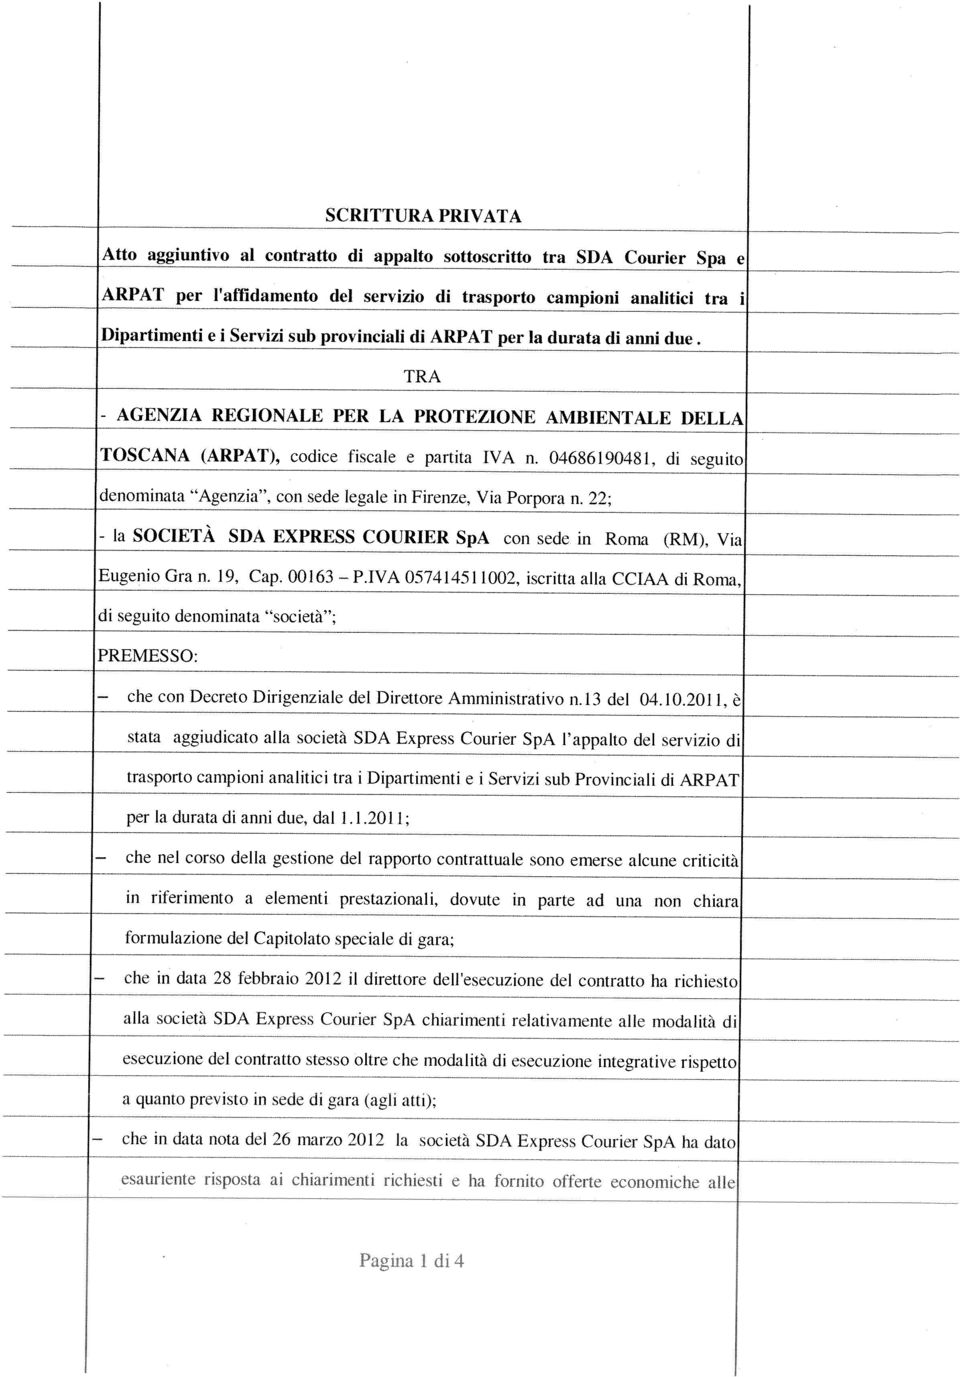 00163 denominata Agenzia, con sede legale in Firenze, Via Porpora n. 22; TOSCANA (ARPAT), codice fiscale e partita IVA n. 04686190481, di seguito - AGENZIA - la P.